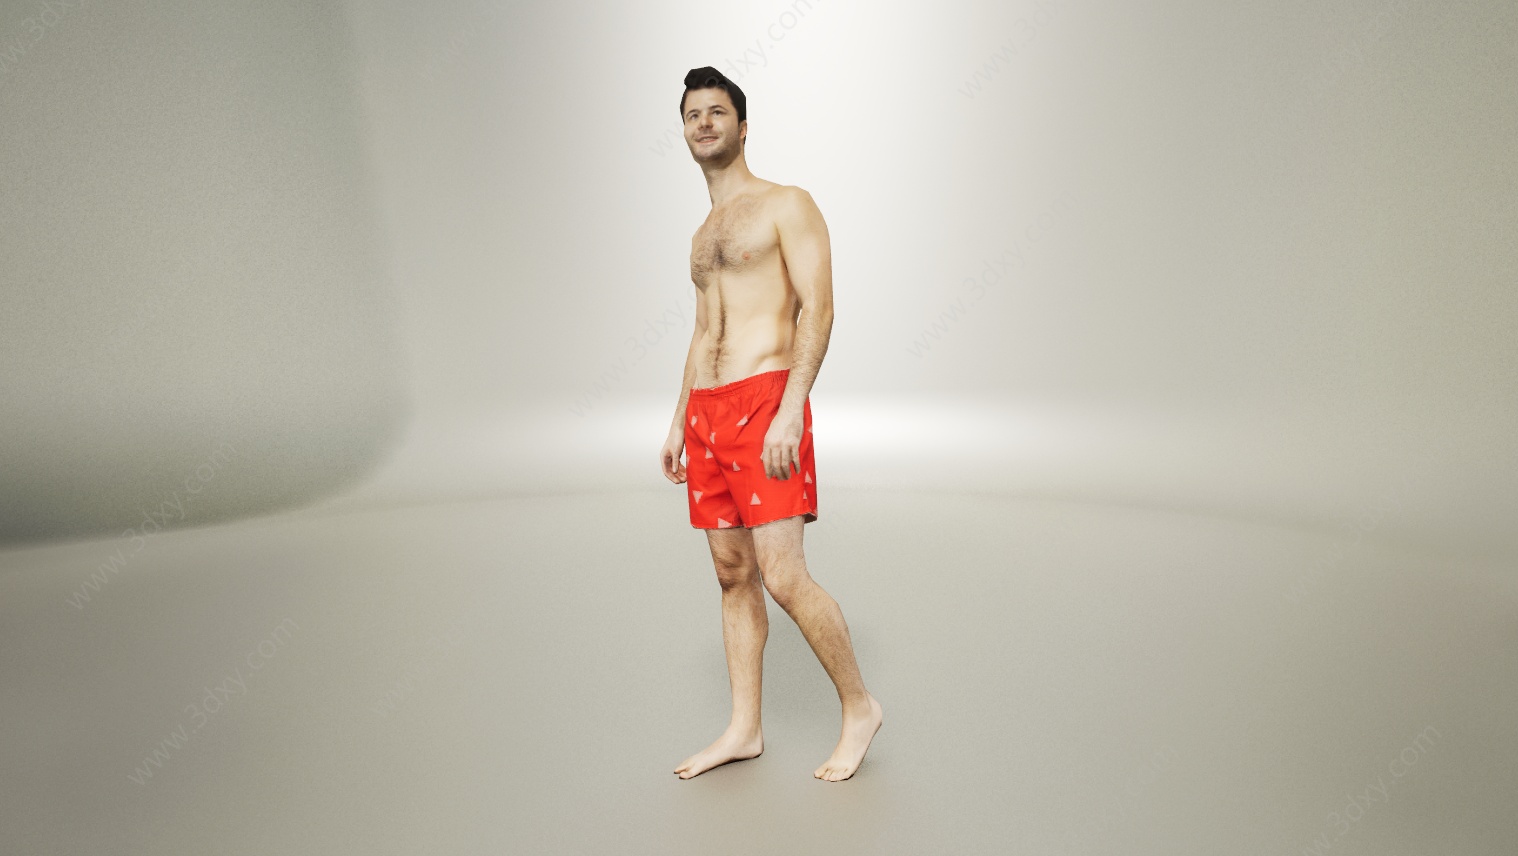 光膀子沙滩裤男人3D模型